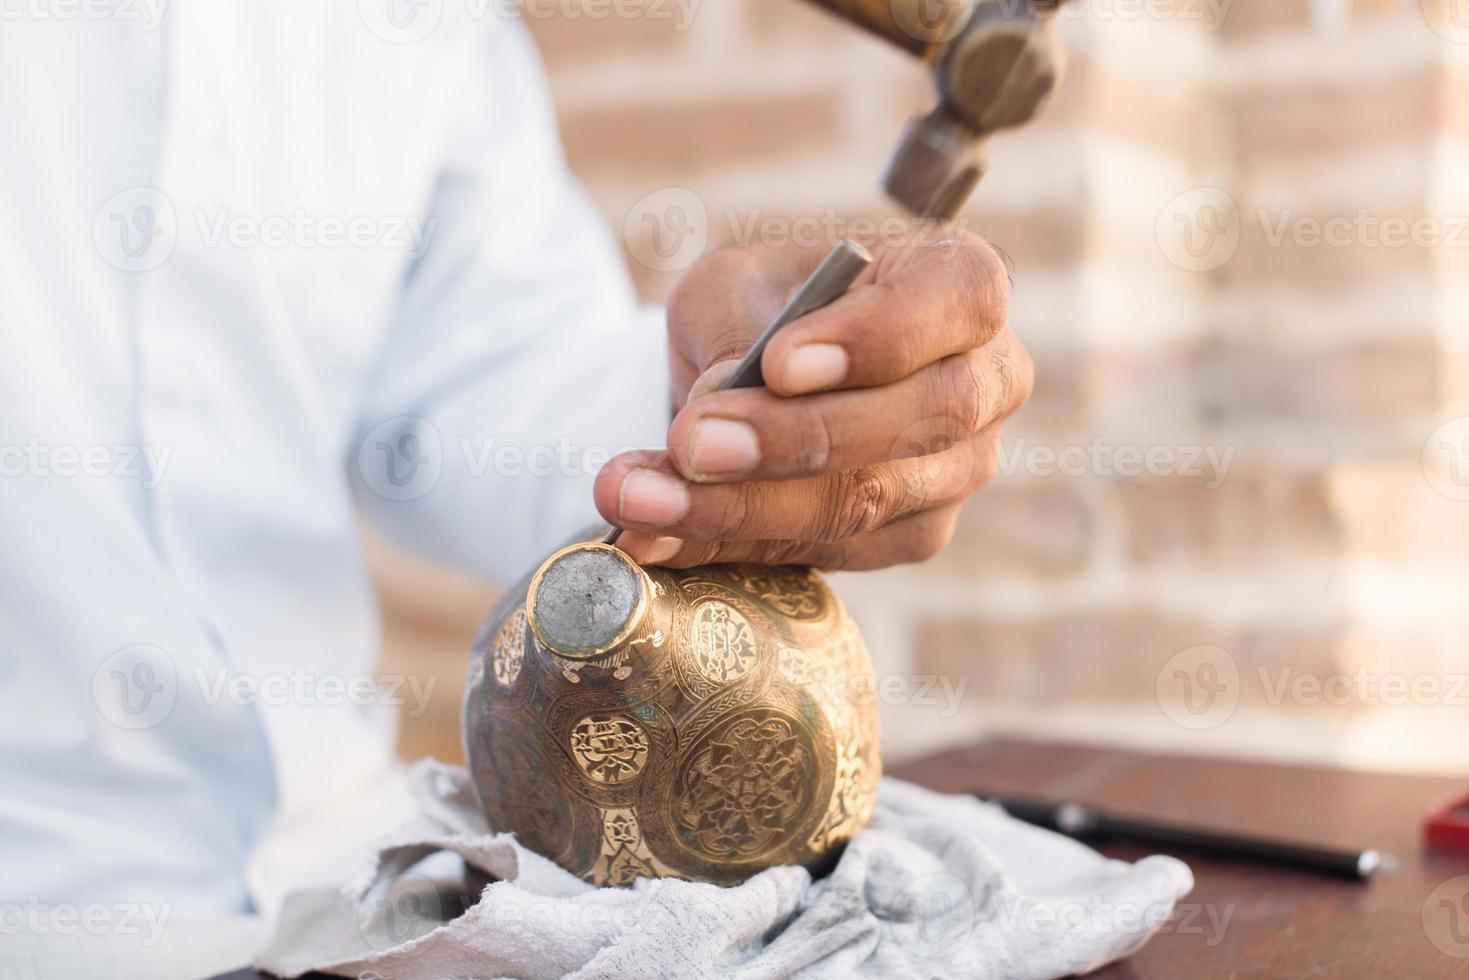 padrões de gravura de artesão no jarro. mestres da Ásia Central. cunhagem manual de cobre foto